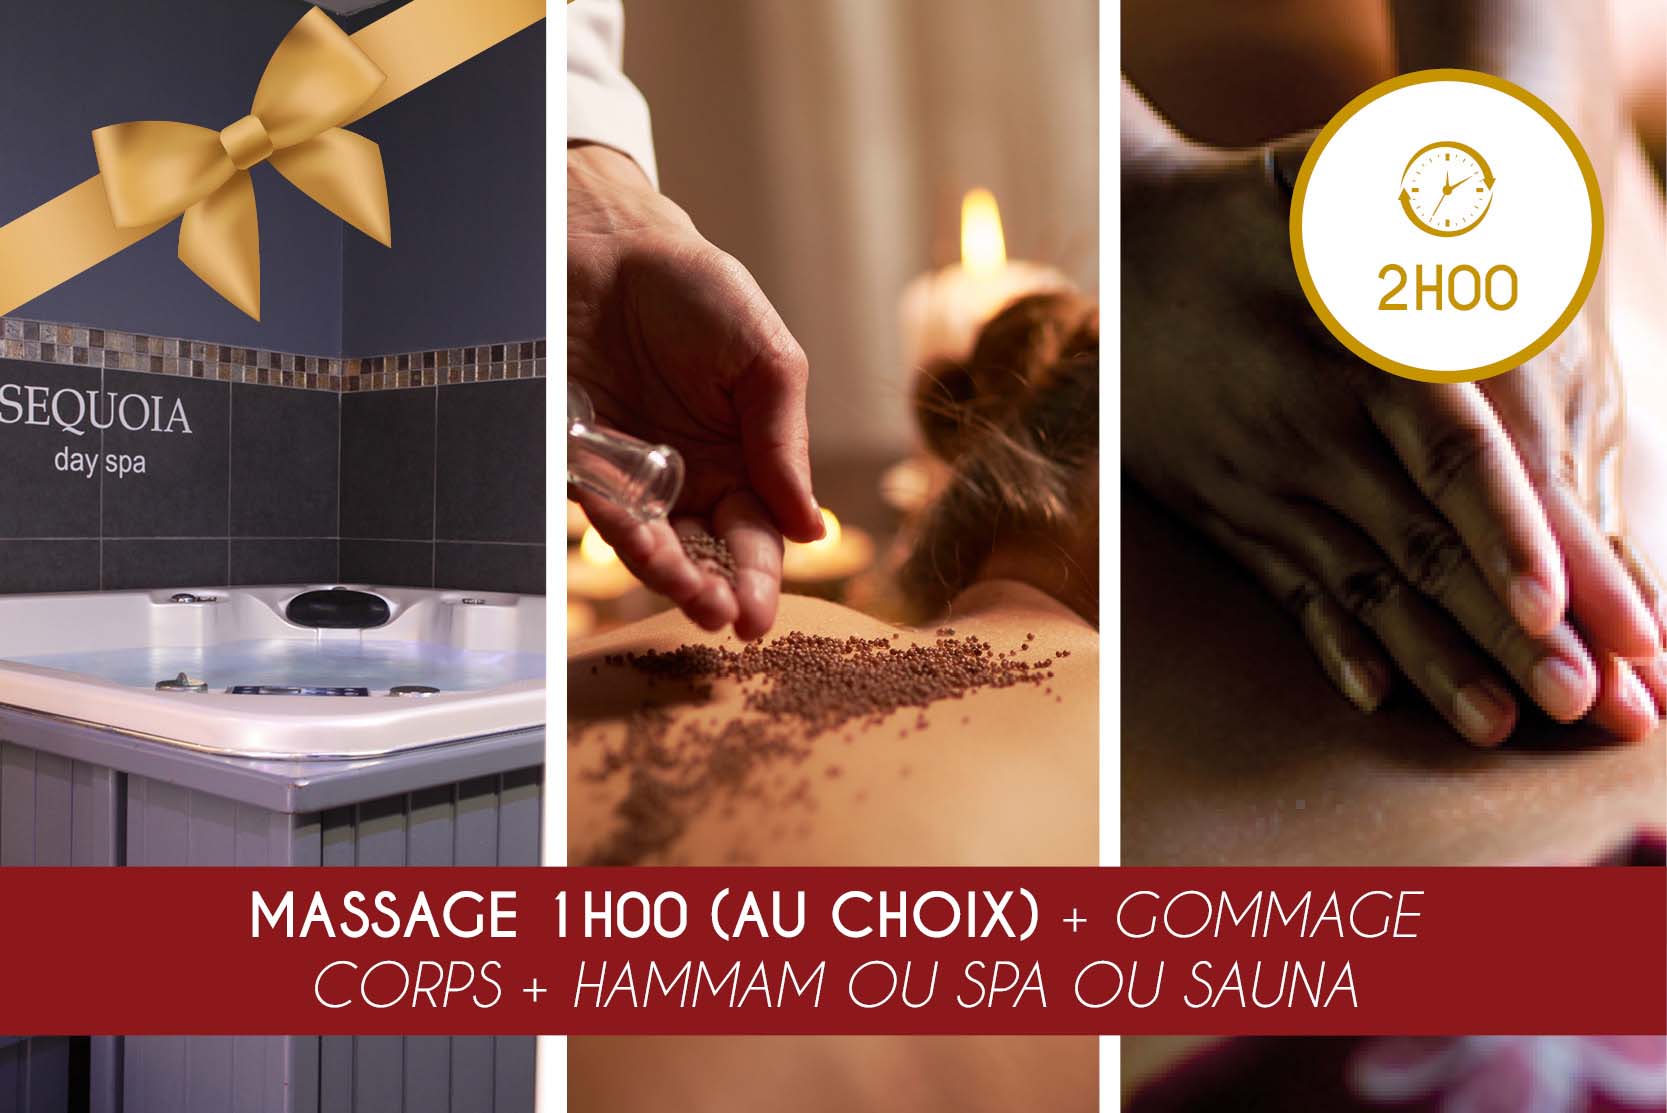 Massage 1h00 (au choix) + Gommage + Hammam OU Spa OU Sauna